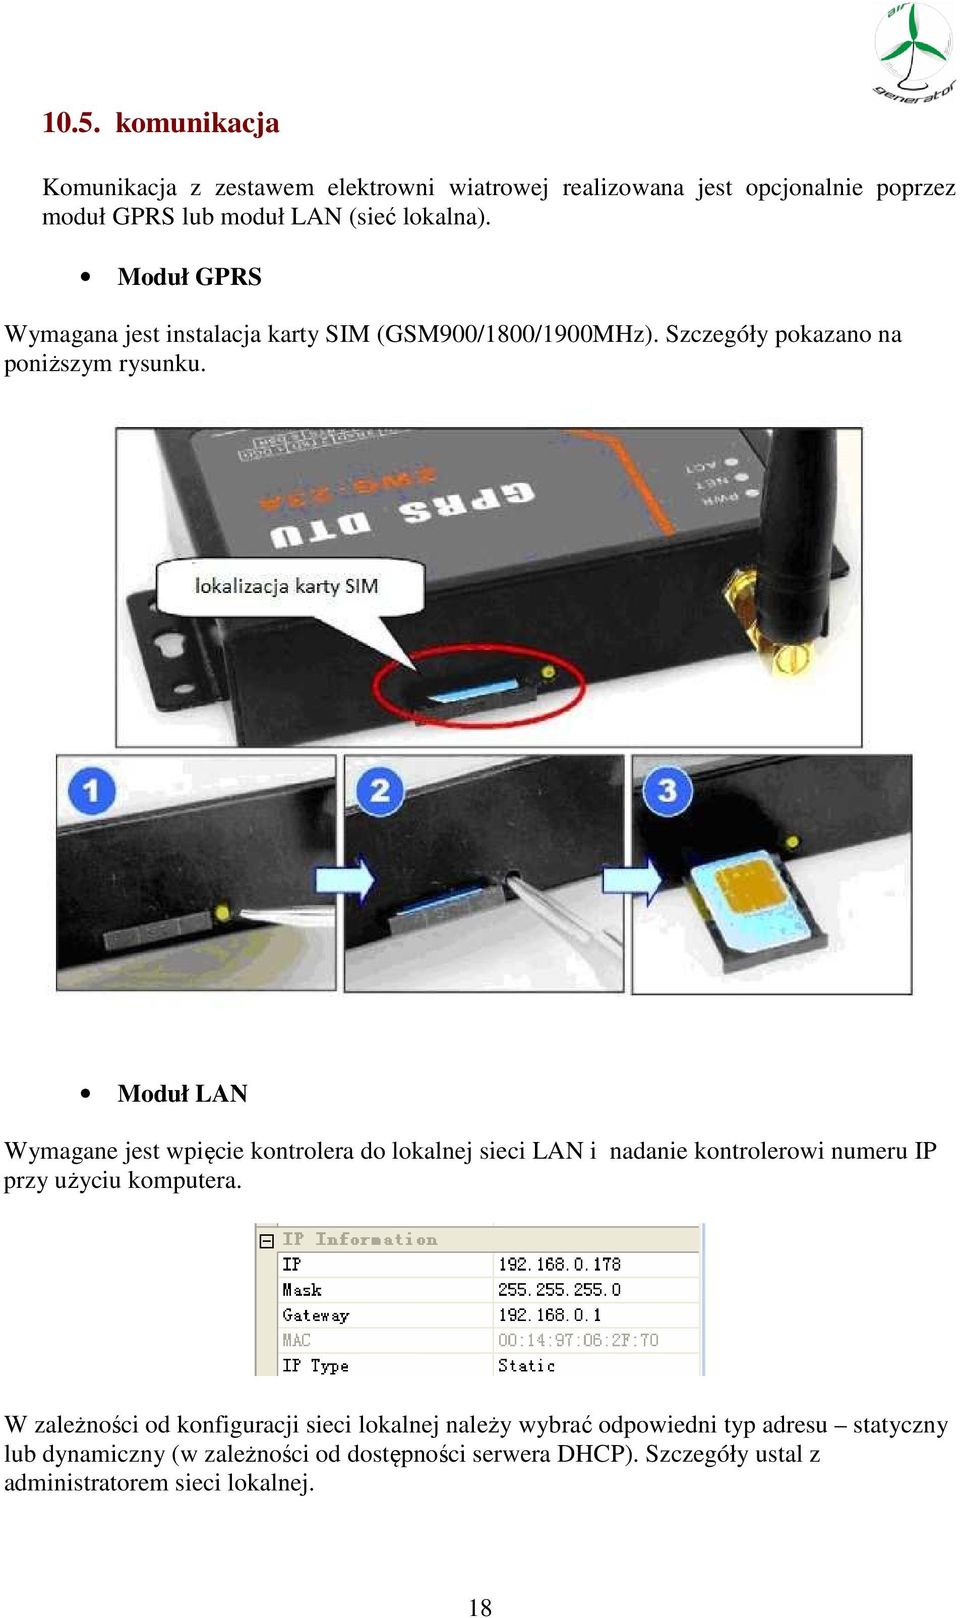 Moduł LAN Wymagane jest wpięcie kontrolera do lokalnej sieci LAN i nadanie kontrolerowi numeru IP przy użyciu komputera.